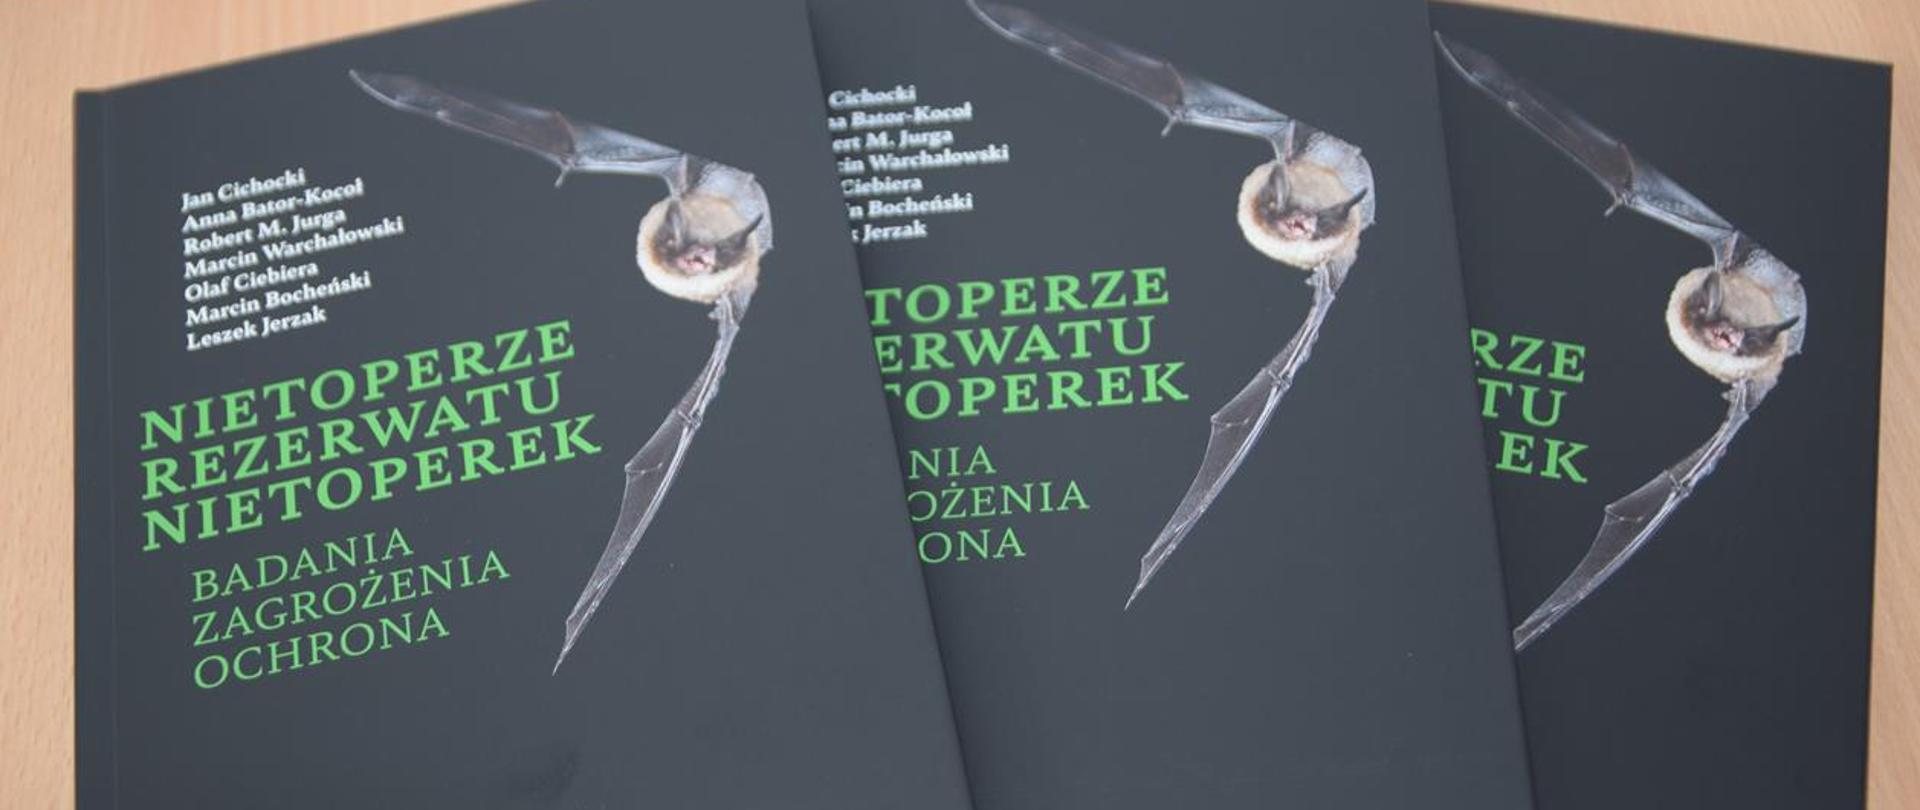 Na zdjęciu trzy książki o tytule Nietoperze Rezerwatu Nietoperek Badania Zagrożenia Ochrona, na nich nietoperz